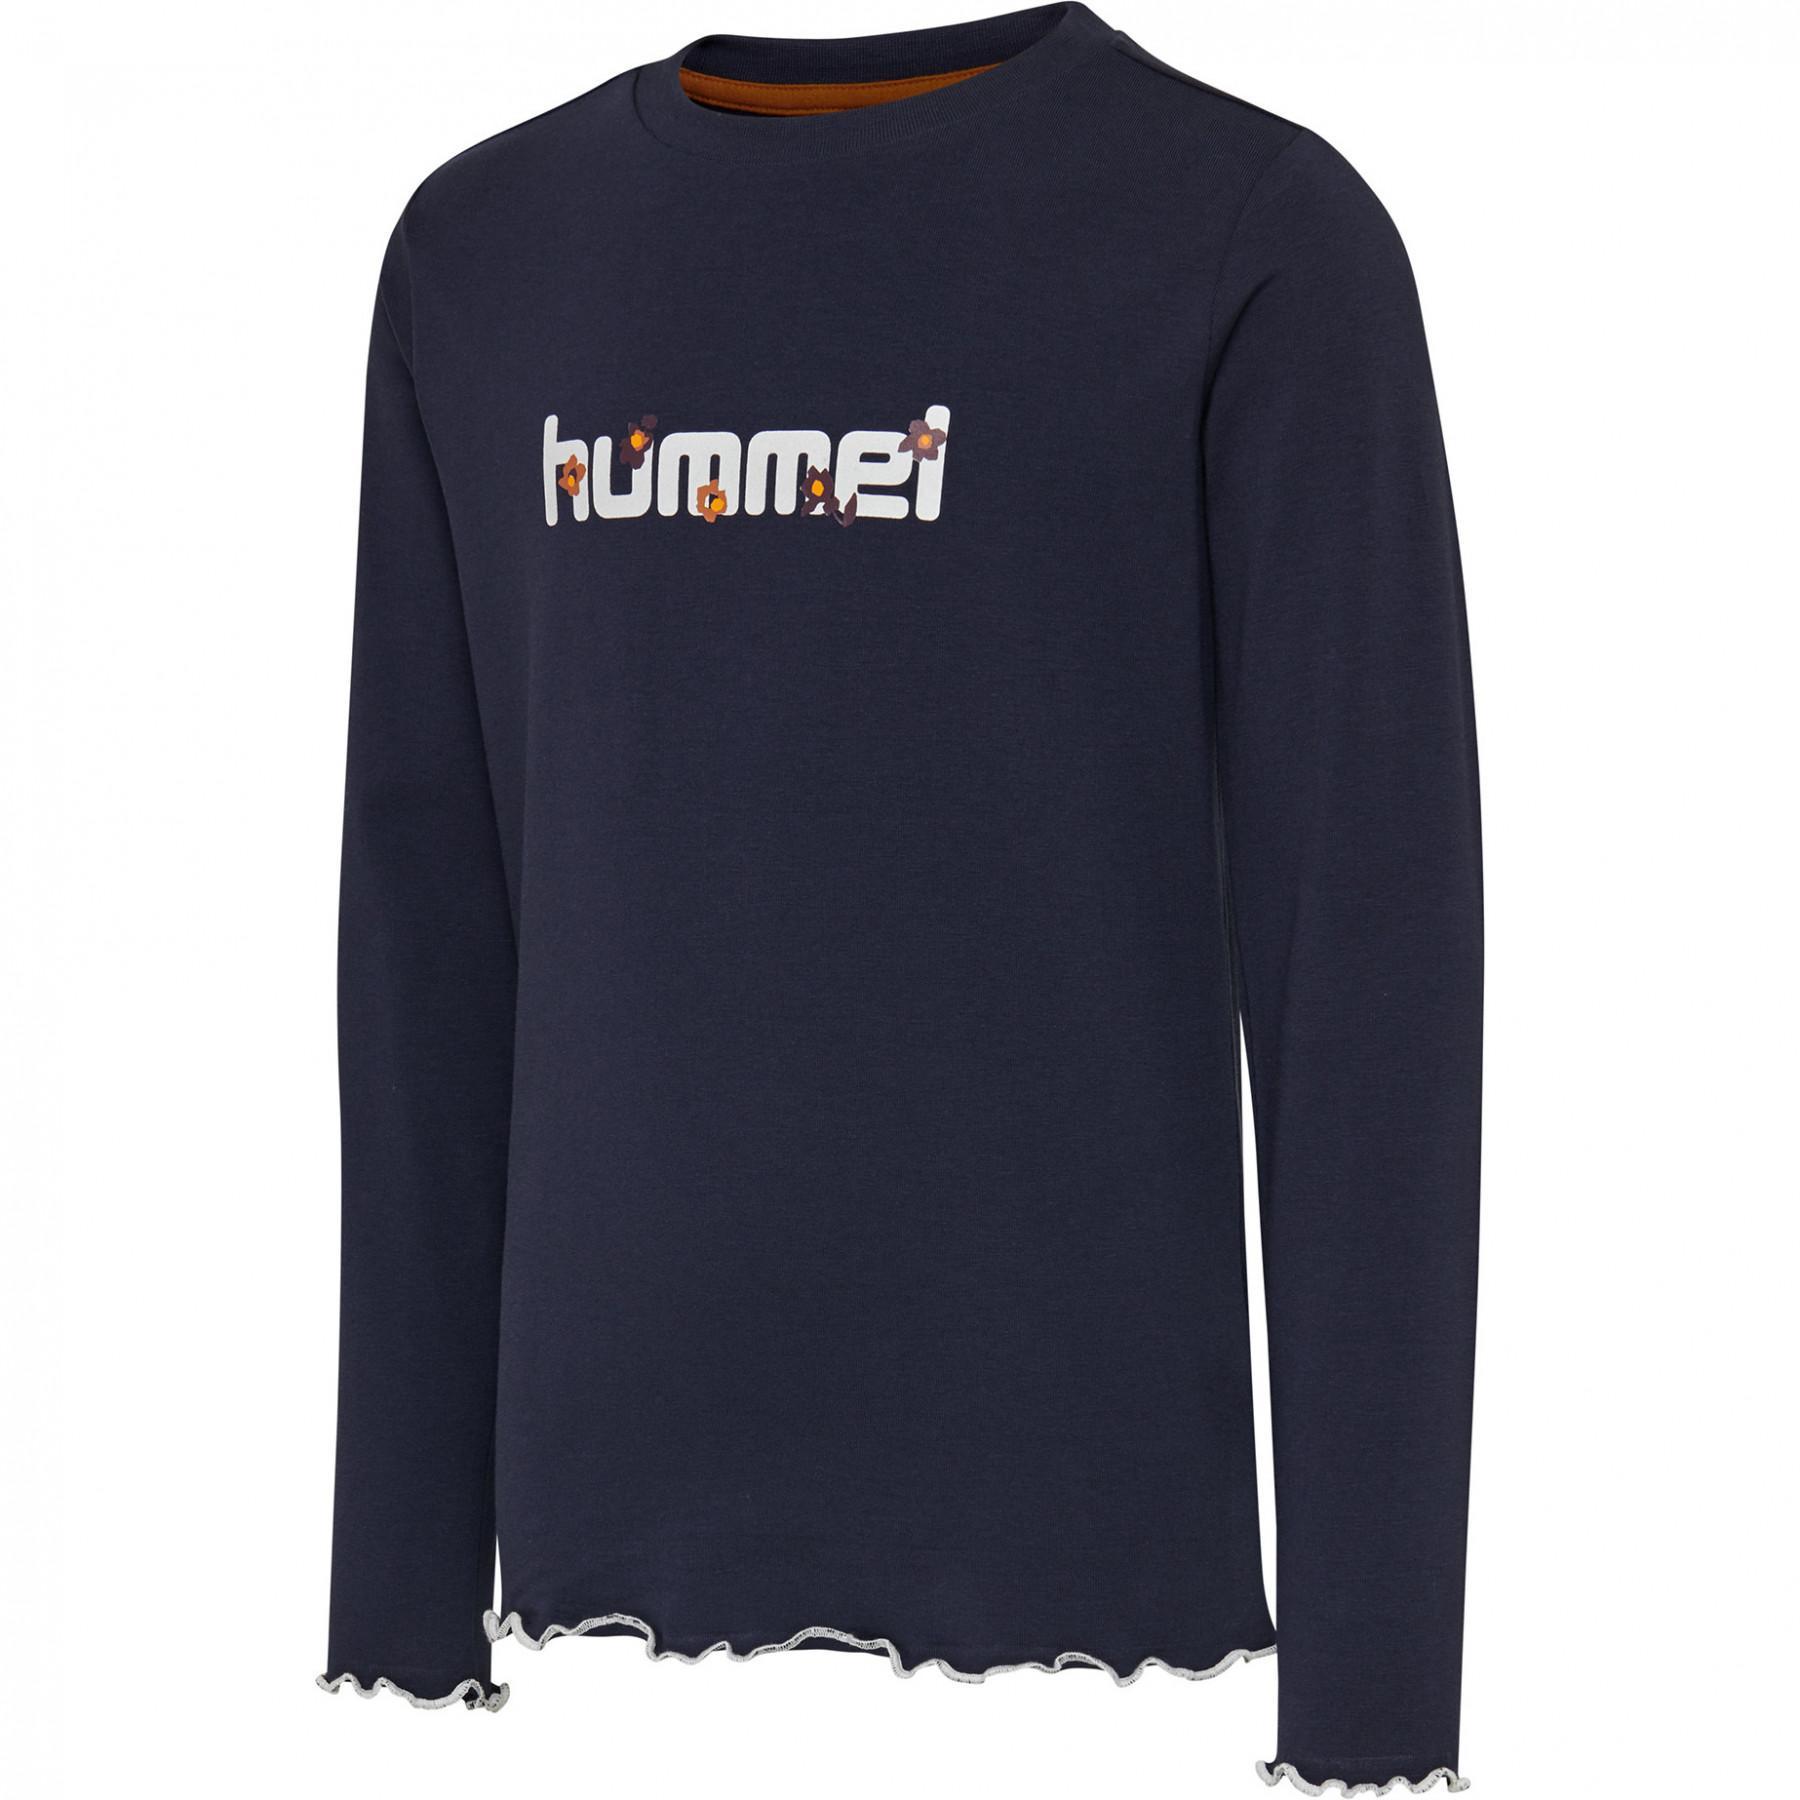 T-shirt lange mouwen kind Hummel hmlayaka